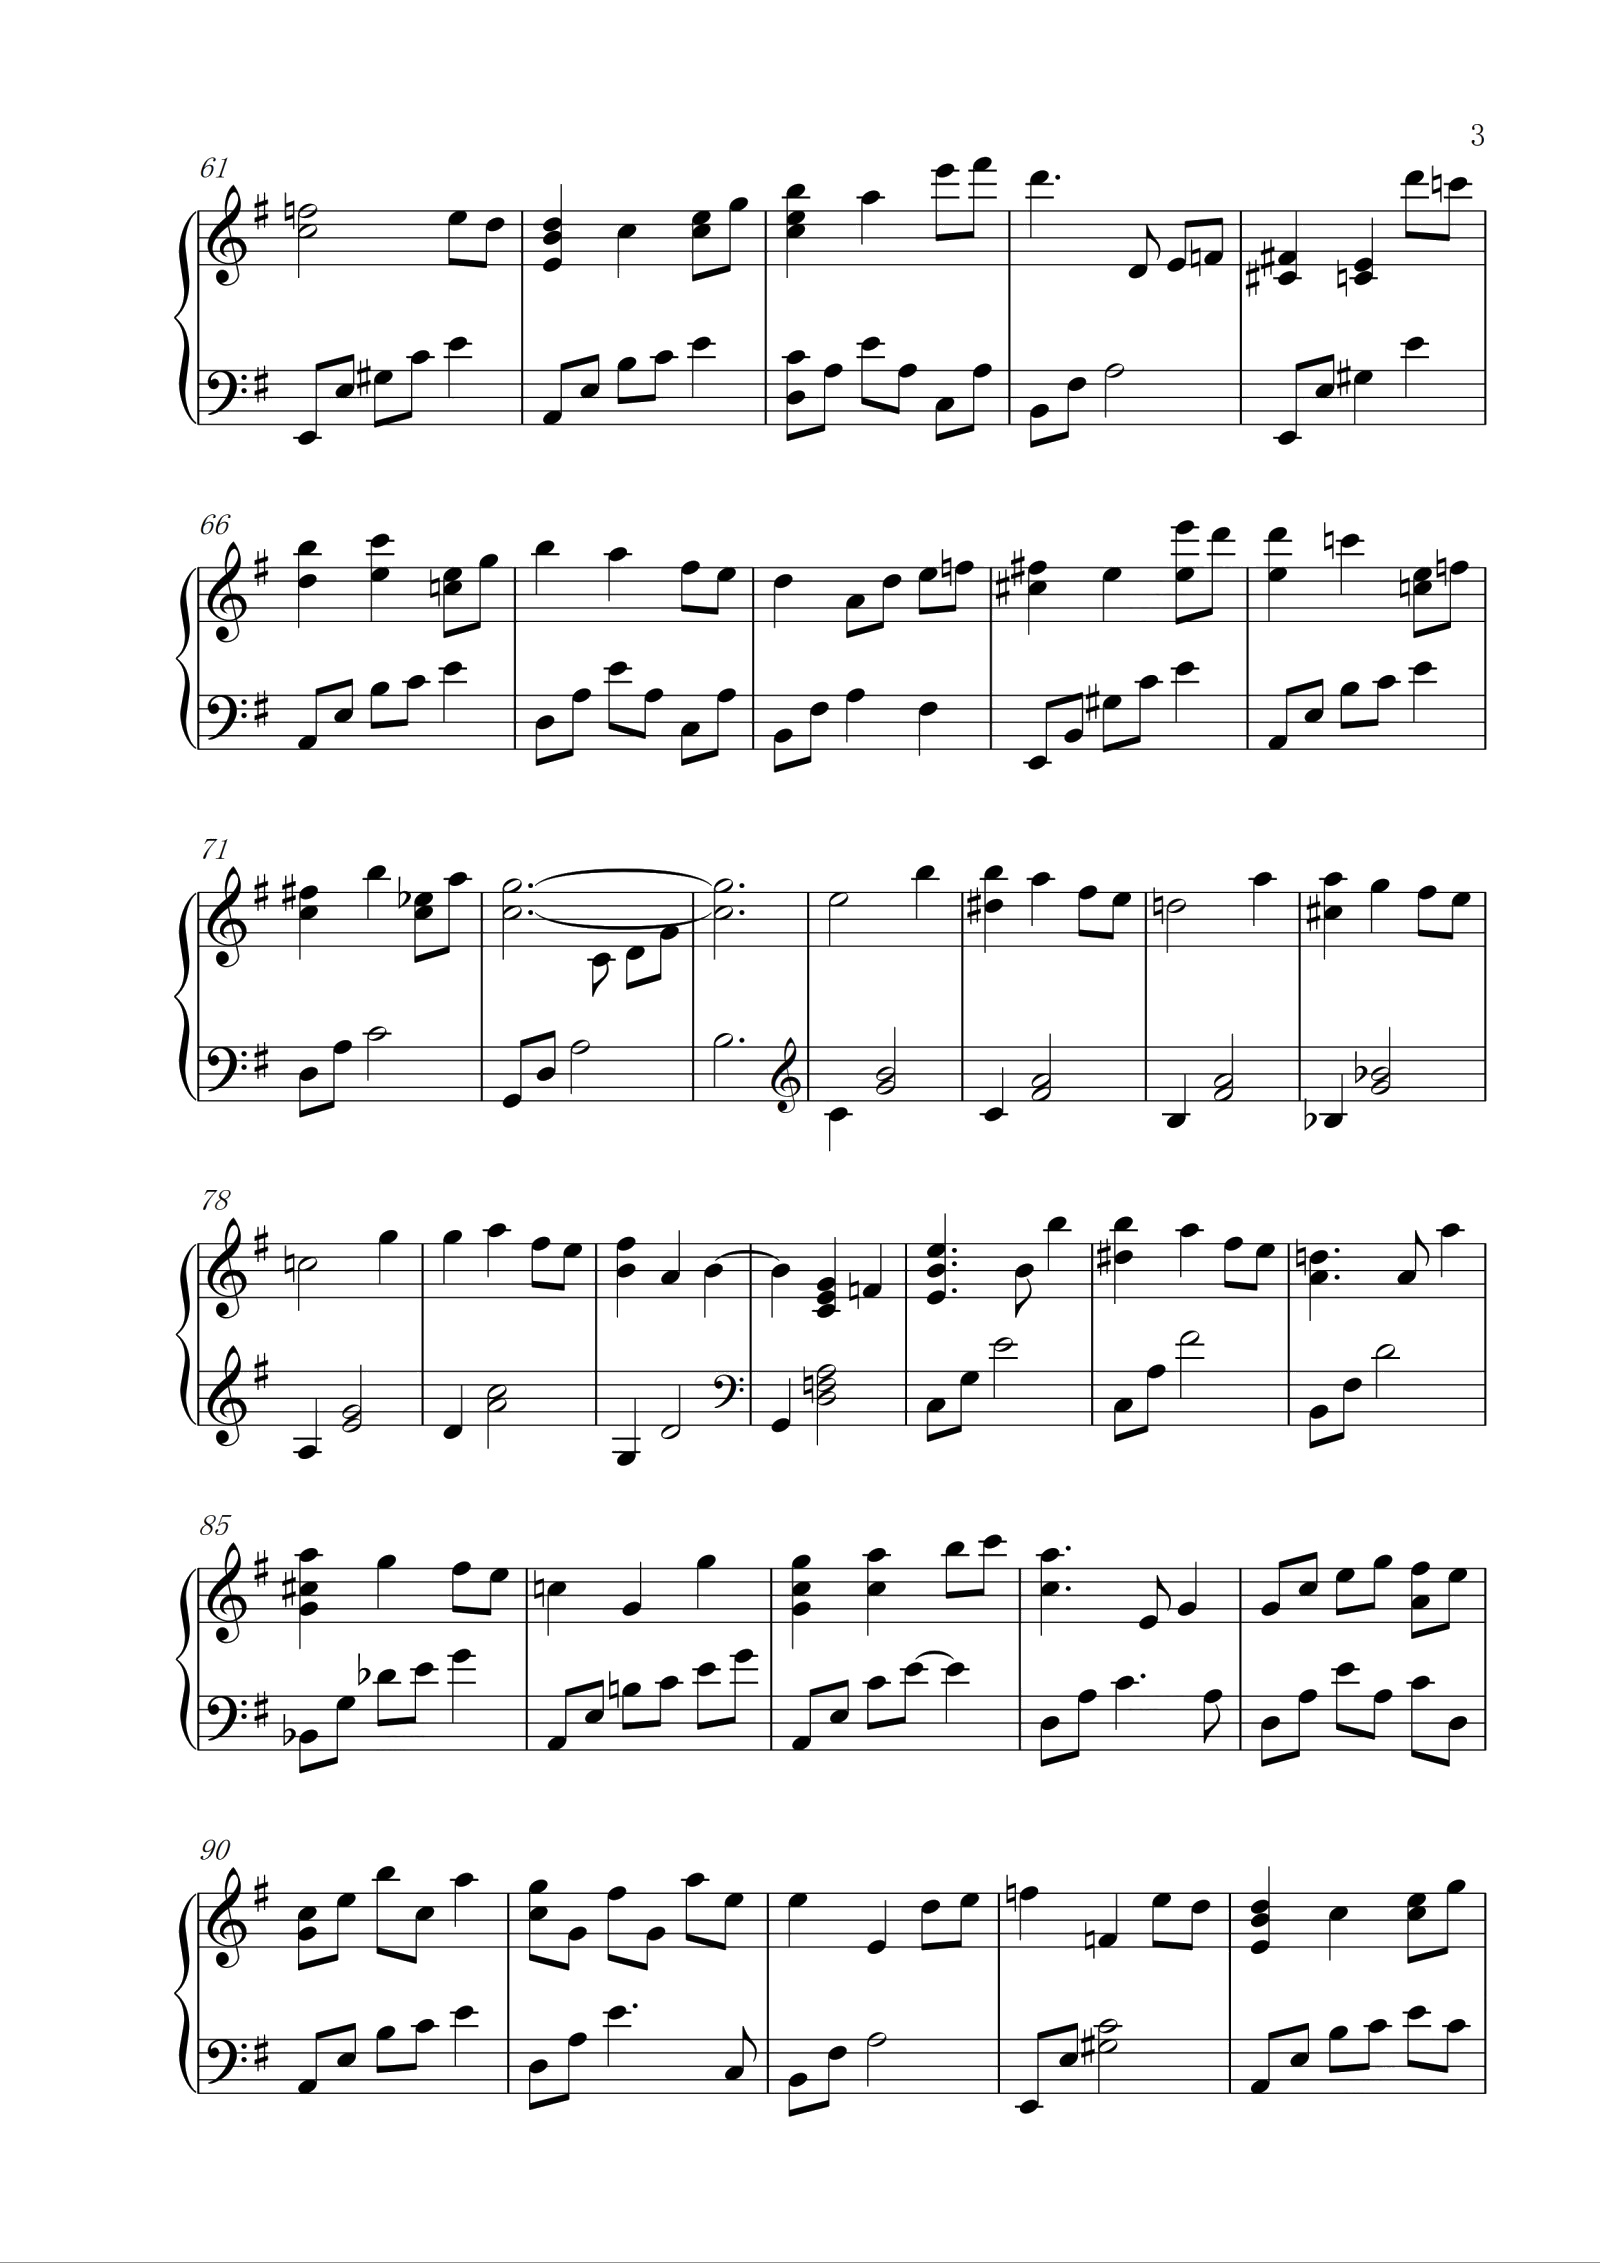 巴赫 - 恰空2 - 钢琴谱 - 环球钢琴网